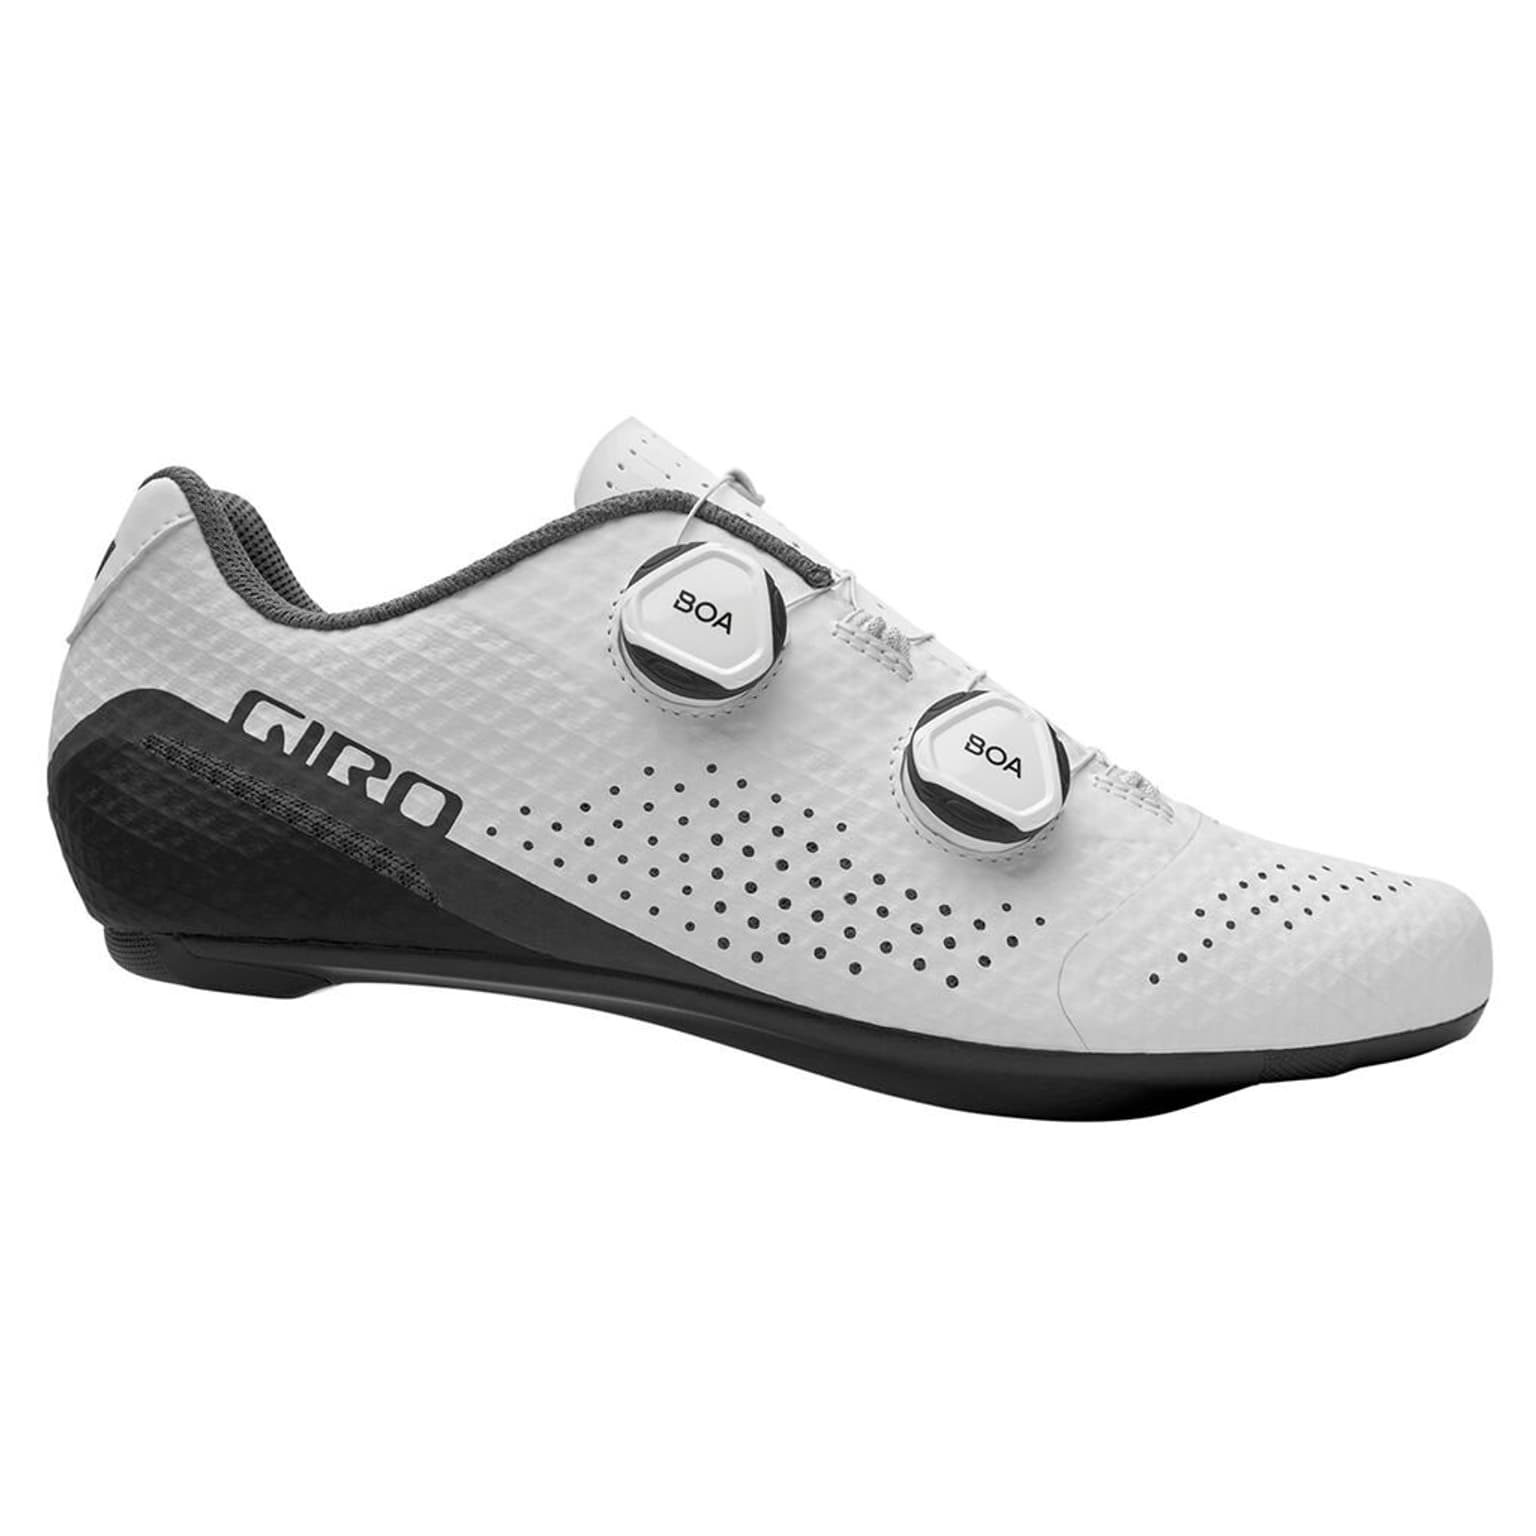 Giro Giro Regime W Shoe Chaussures de cyclisme blanc 1